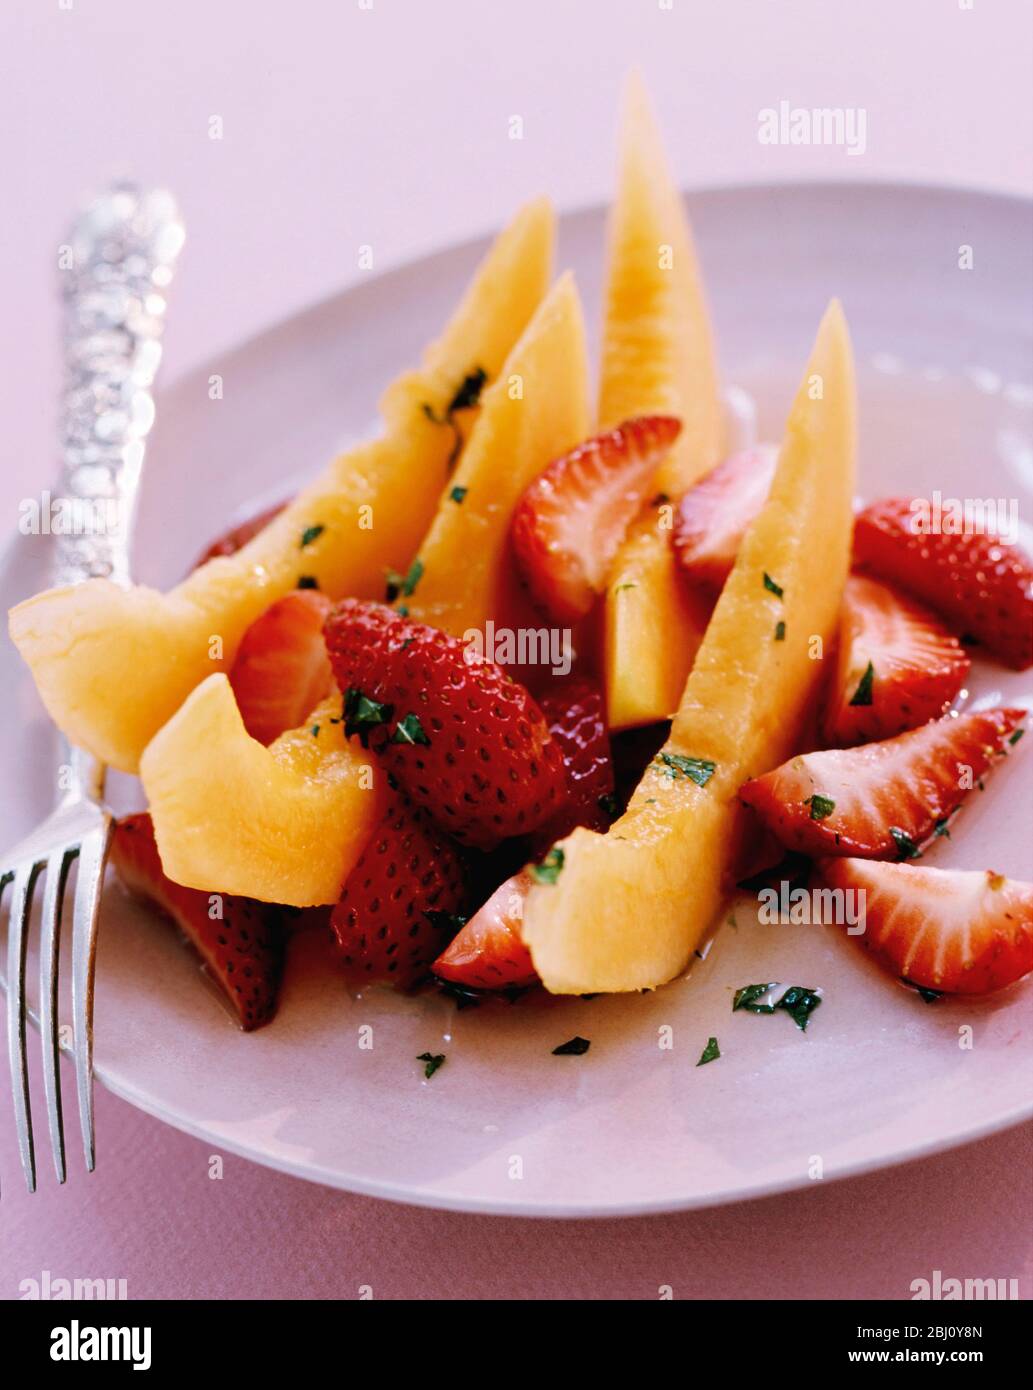 Dessertplatte mit frischem Obstsalat aus geschnittenen Erdbeeren und Melonenpfeilchen - Stockfoto